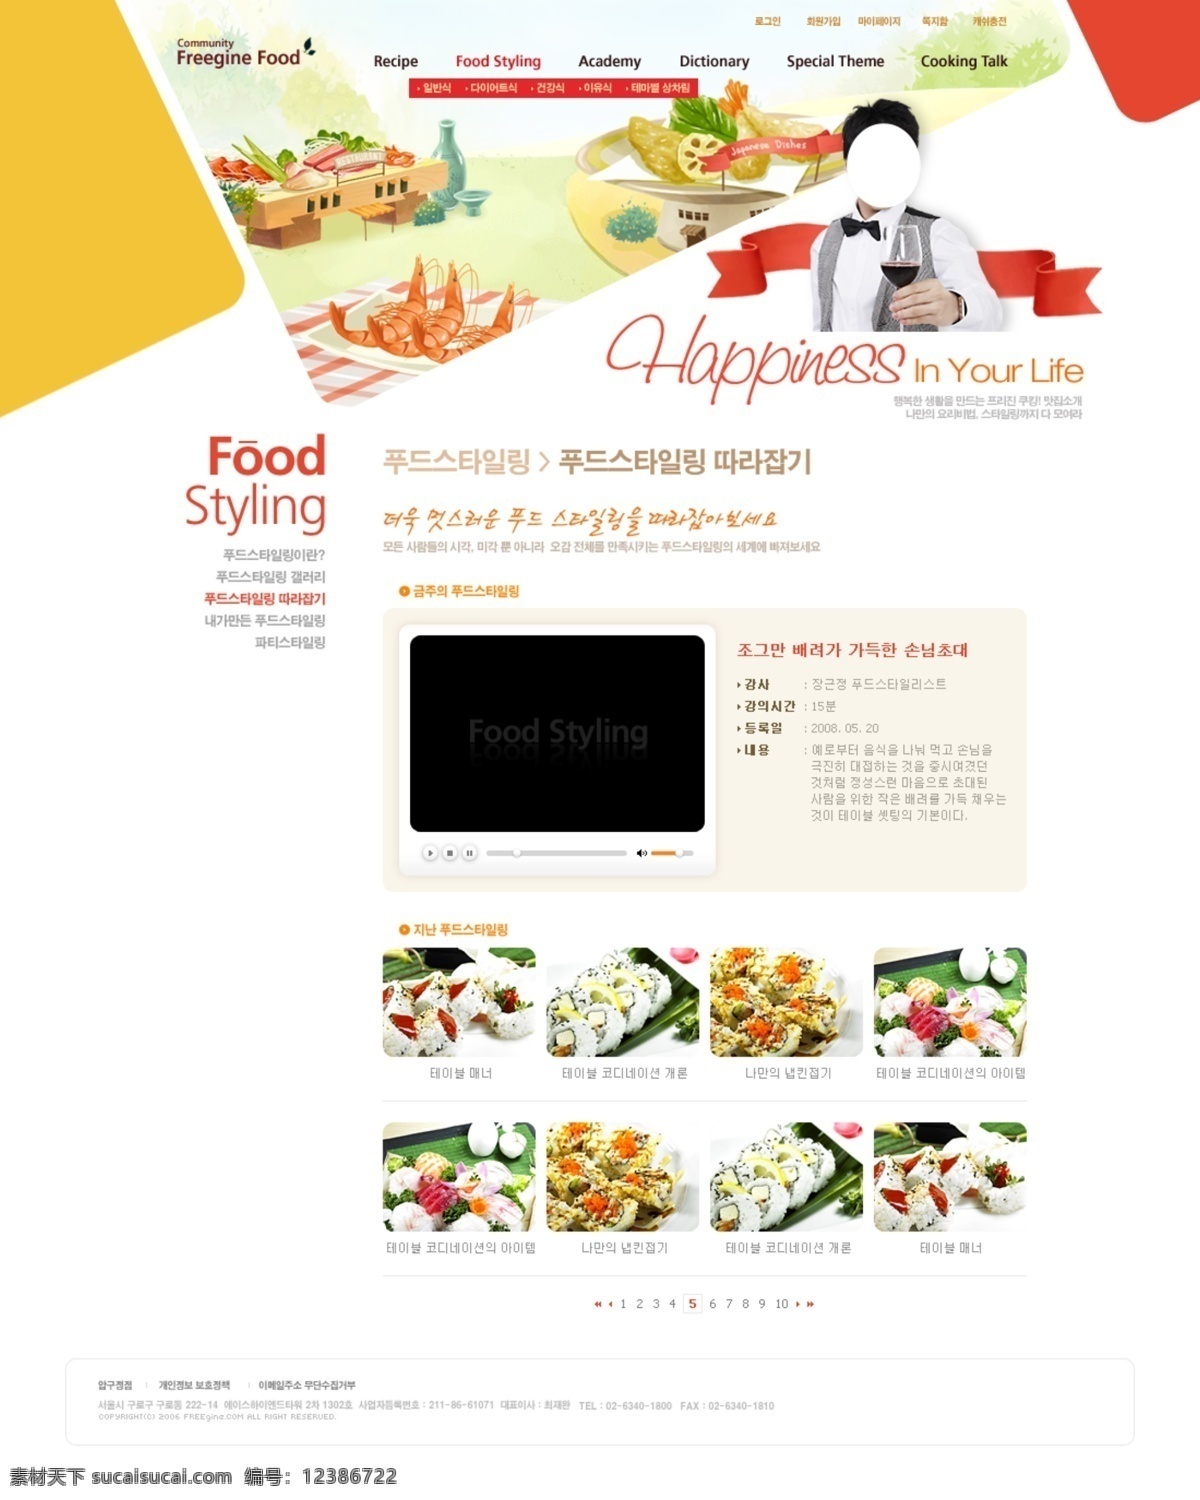 韩版网页 分层 韩国风格网页 食品网站 公司网站 韩国时尚网页 web 界面设计 韩文模板 白色